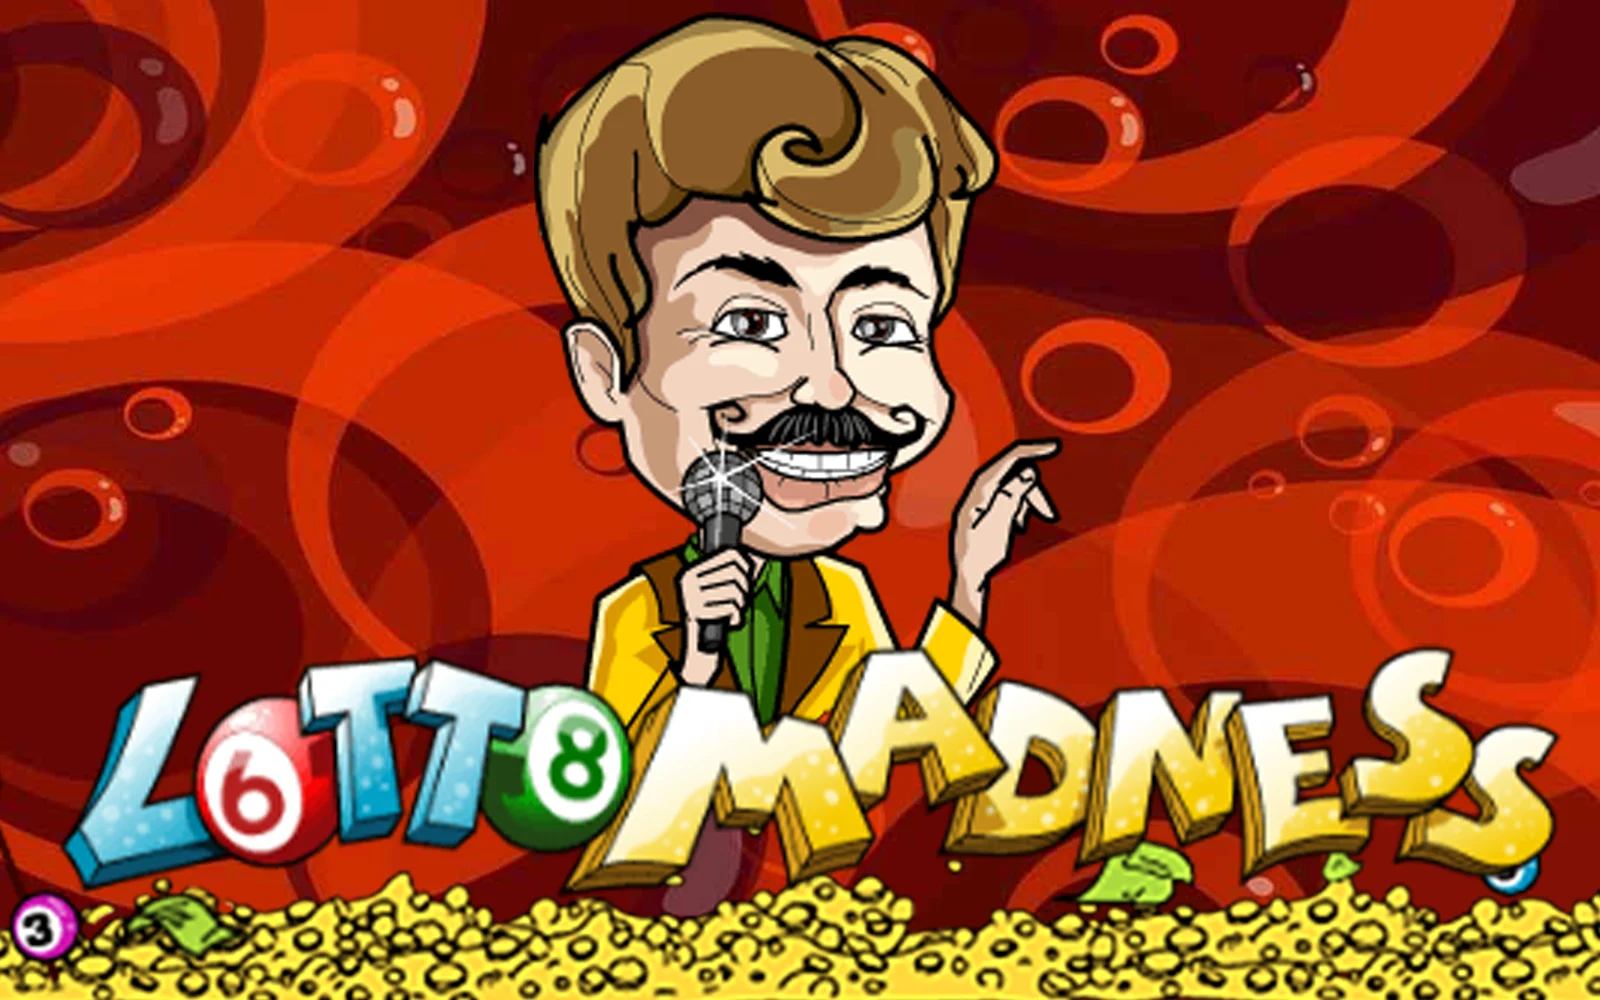 Gioca a Lotto Madness sul casino online Starcasino.be